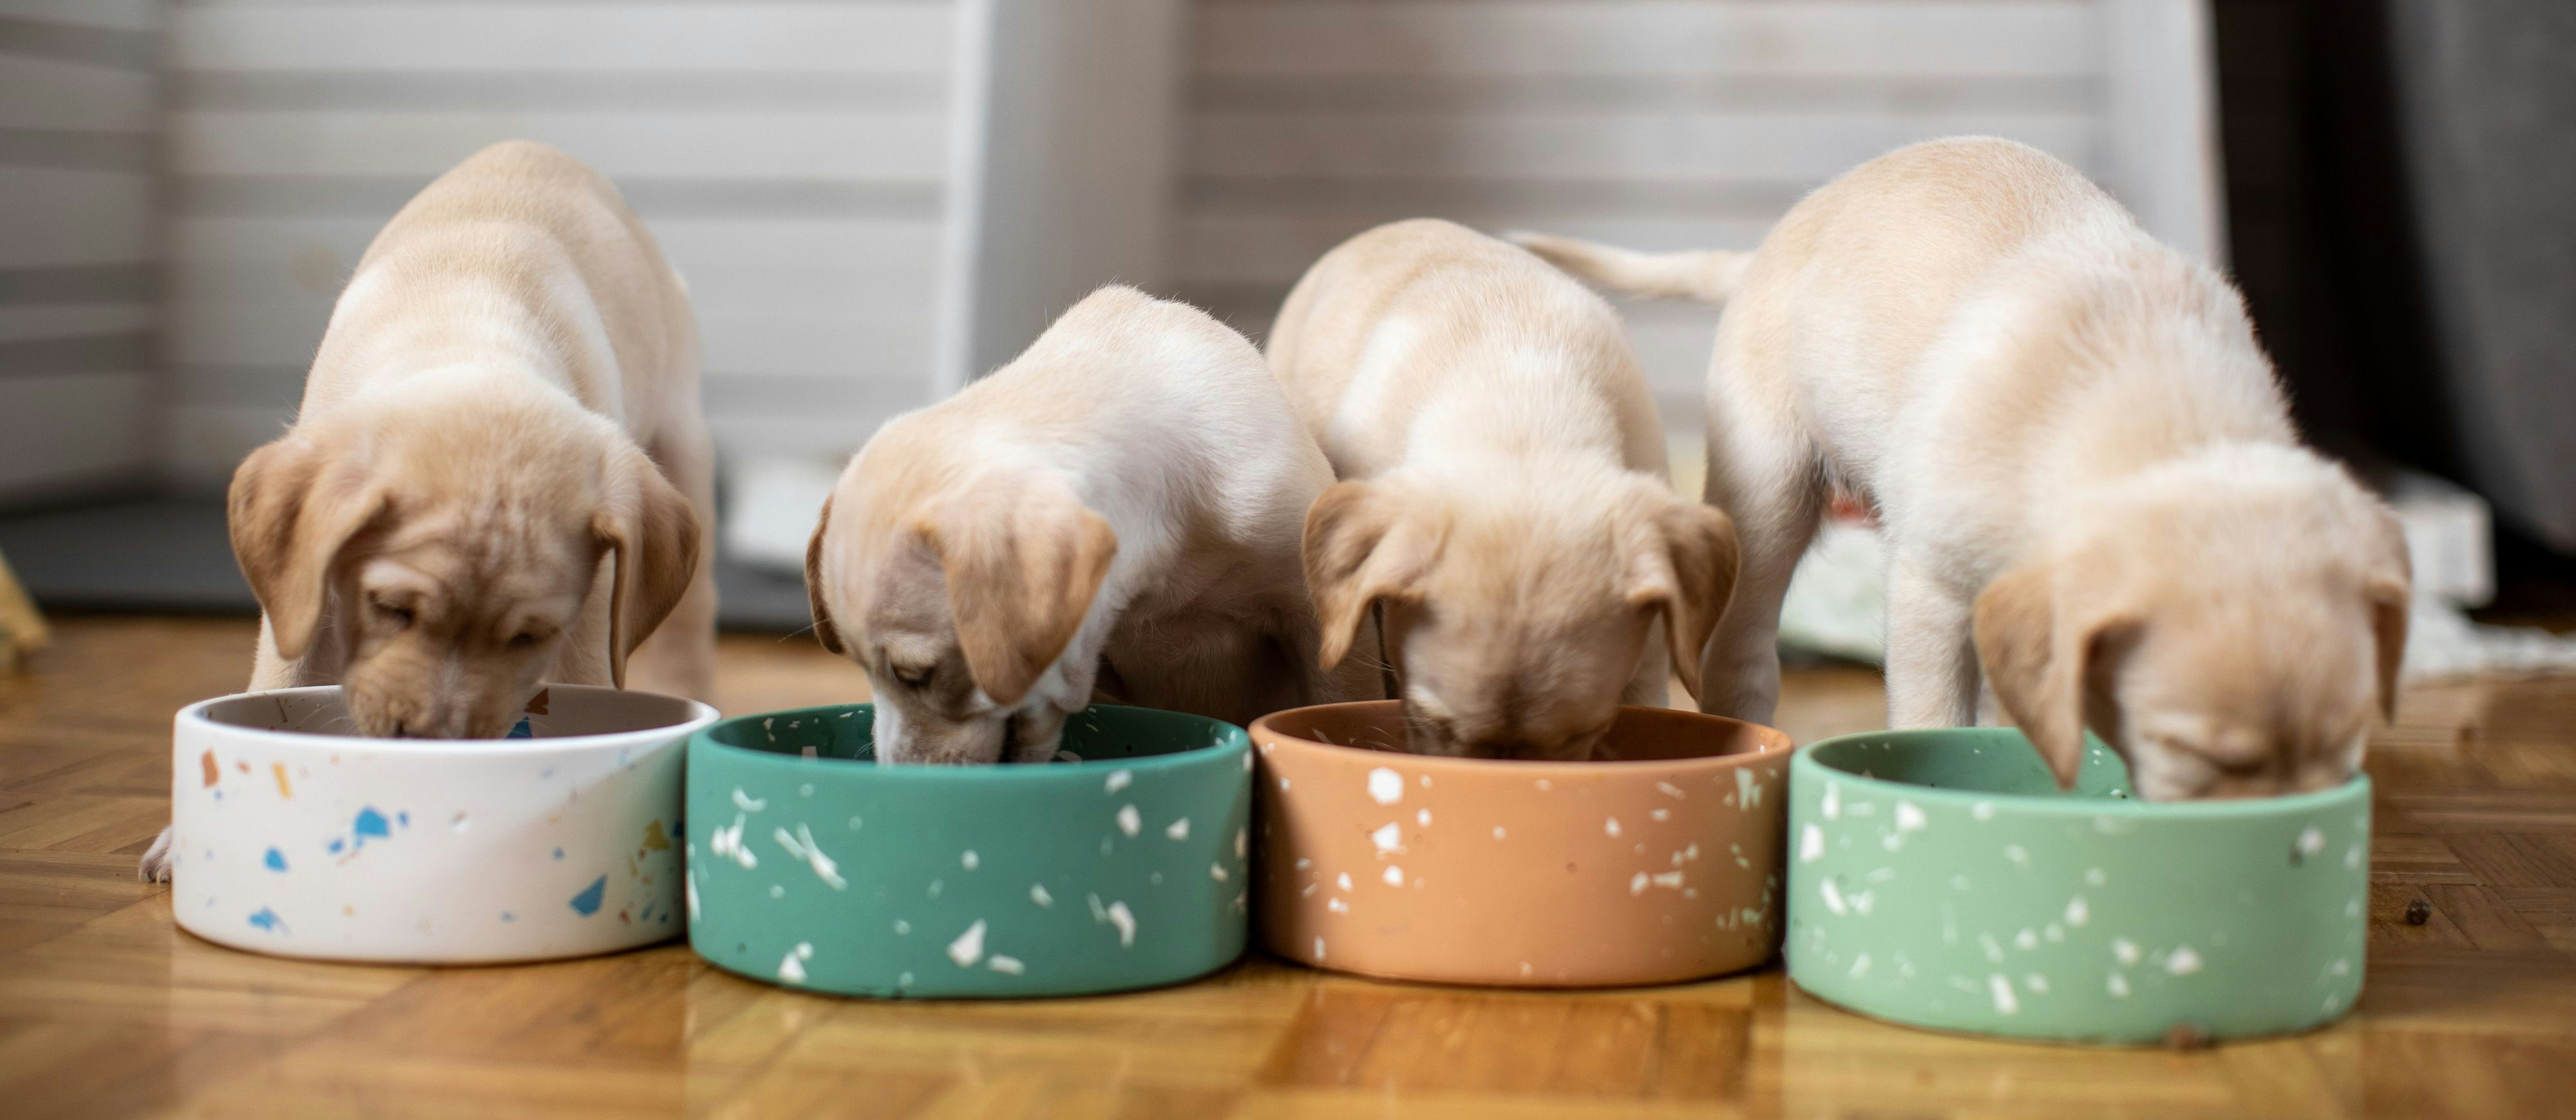 Labradore haben einen ziemlichen Appetit aufs Leben – aber nicht nur